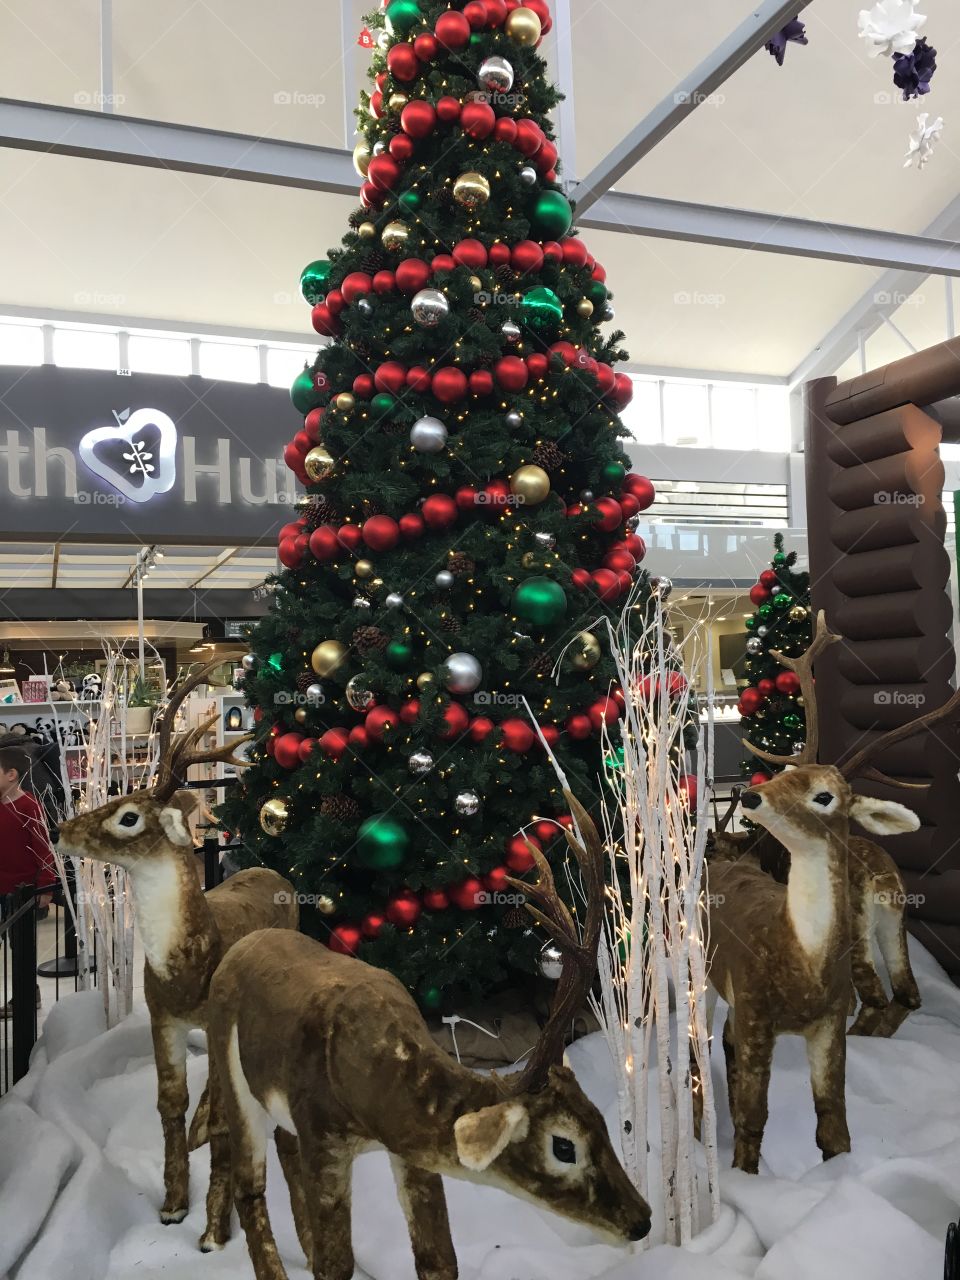 Santa’s Village at the mall